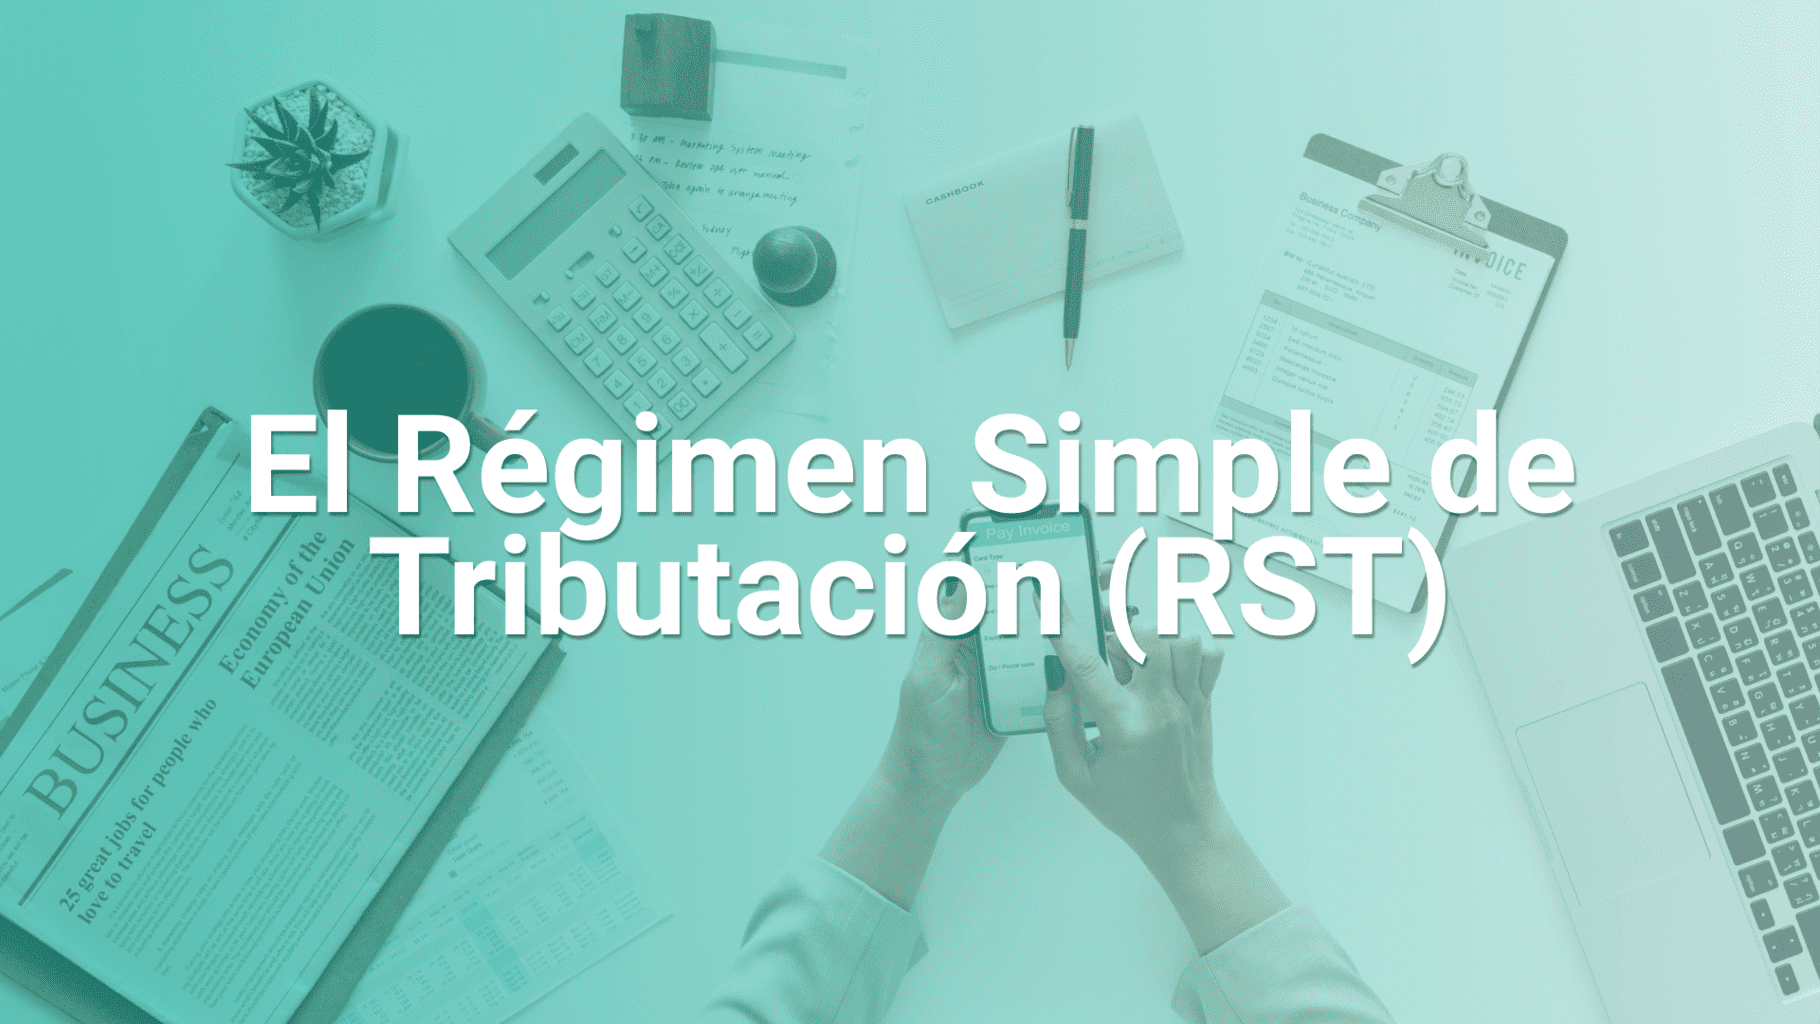 Régimen simple de Tributación (RST) en Colombia 2021